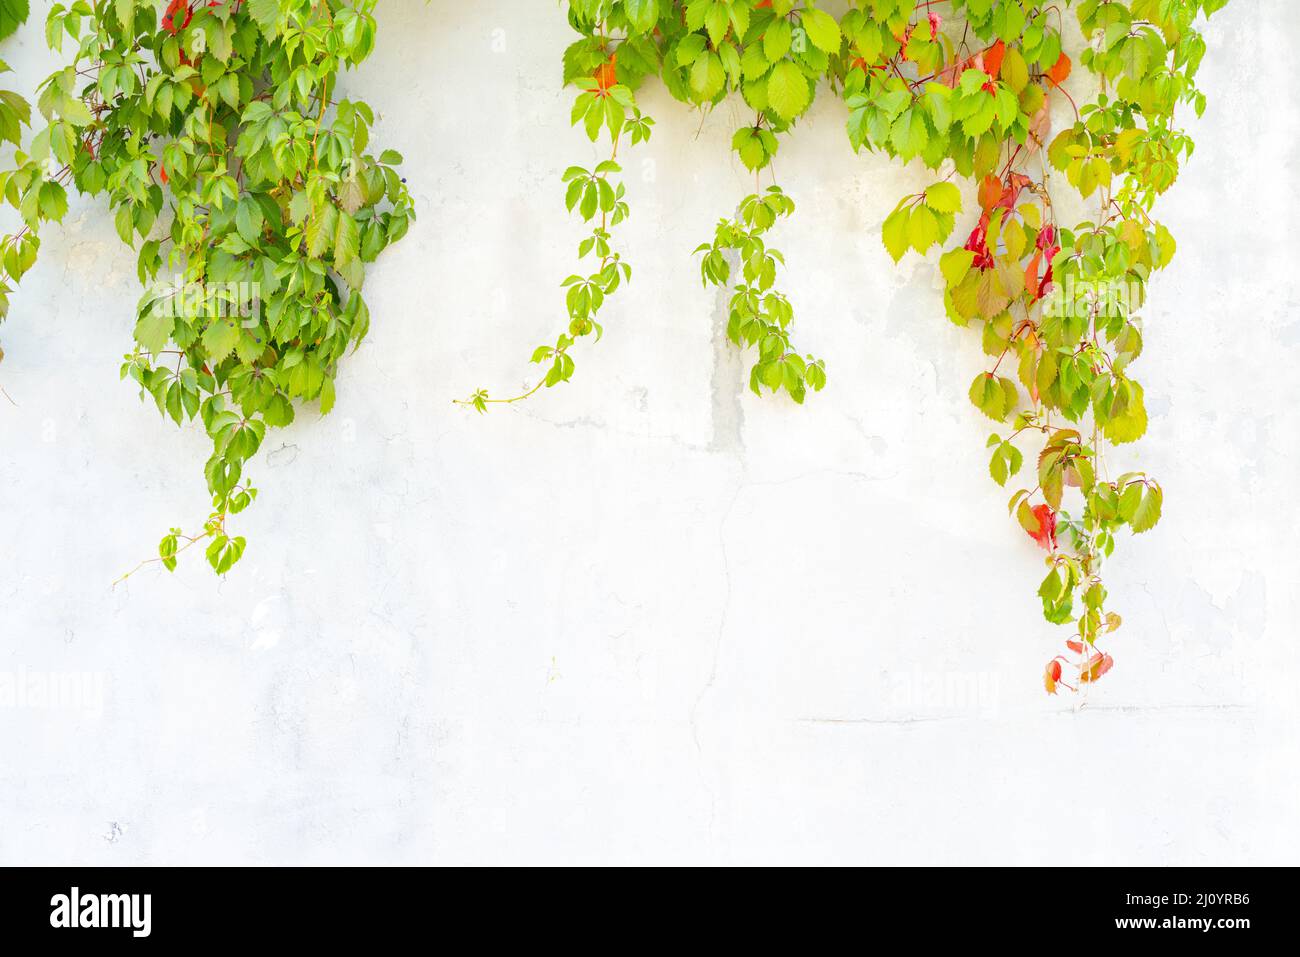 Il verde e il rosso delle foglie di uva selvatica su un intonacata parete bianca. Foto Stock